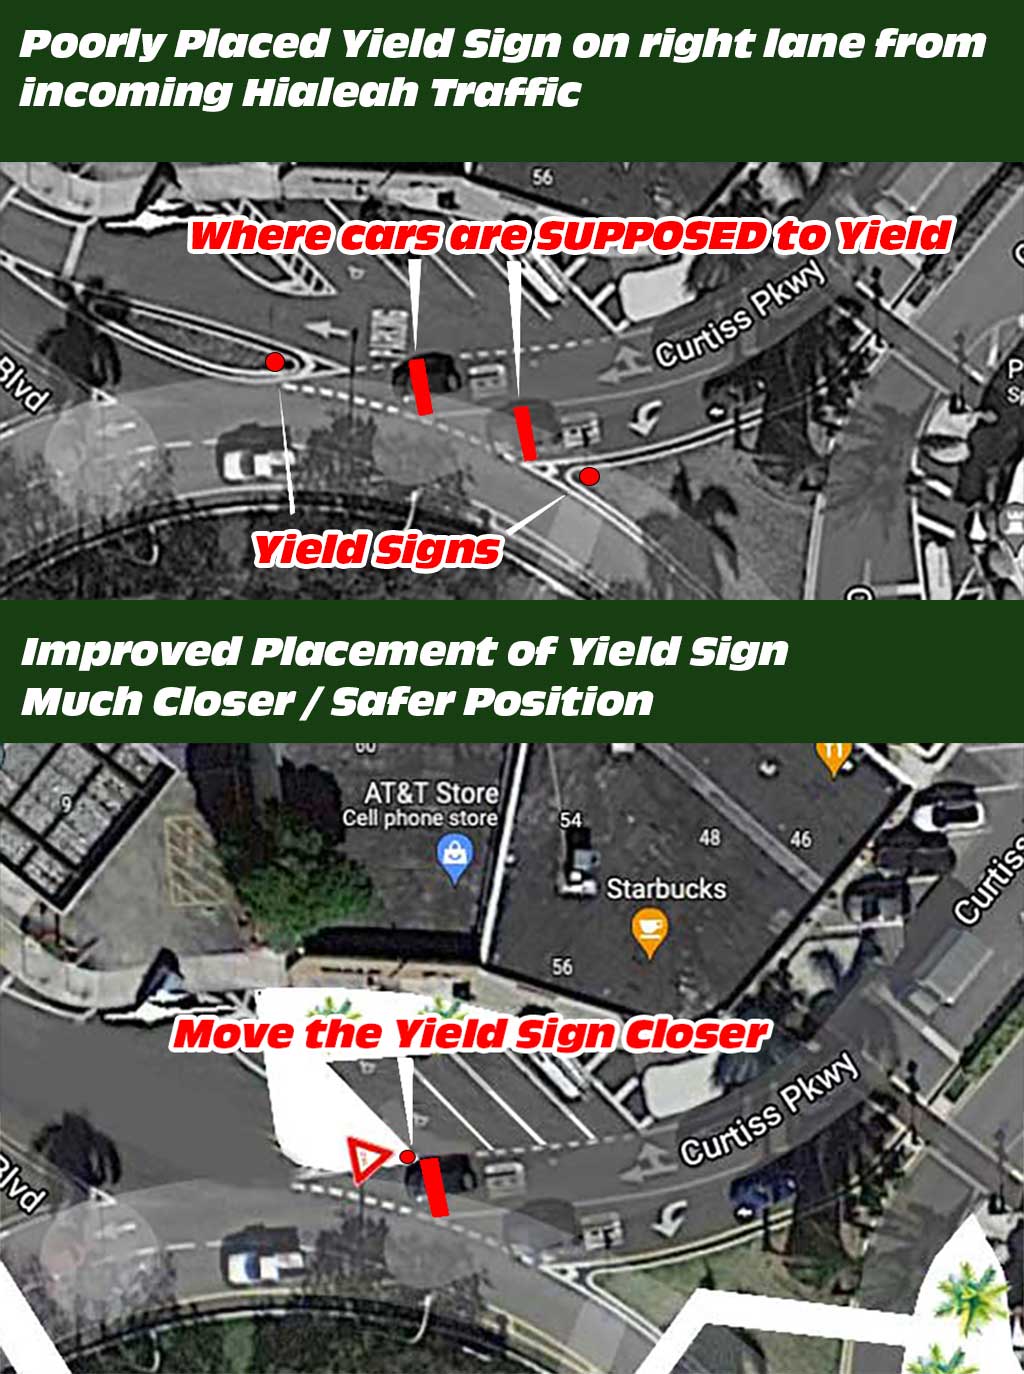 Yield Sign Improvements at Circle